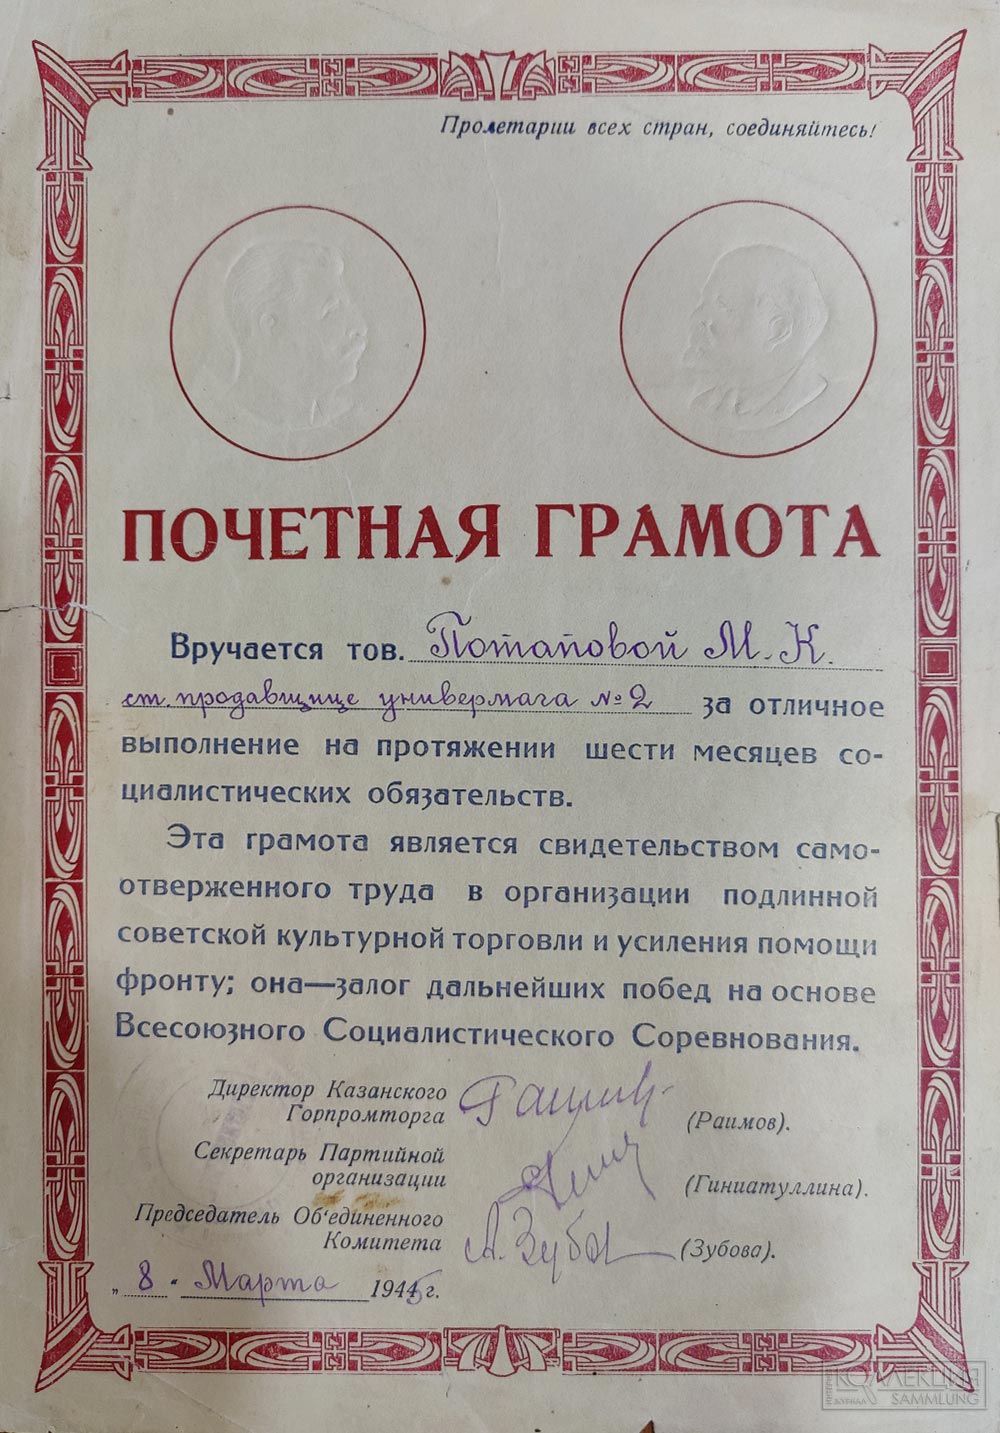 Почётная грамота Казанский Горпромторг Универмаг №2 1945 год